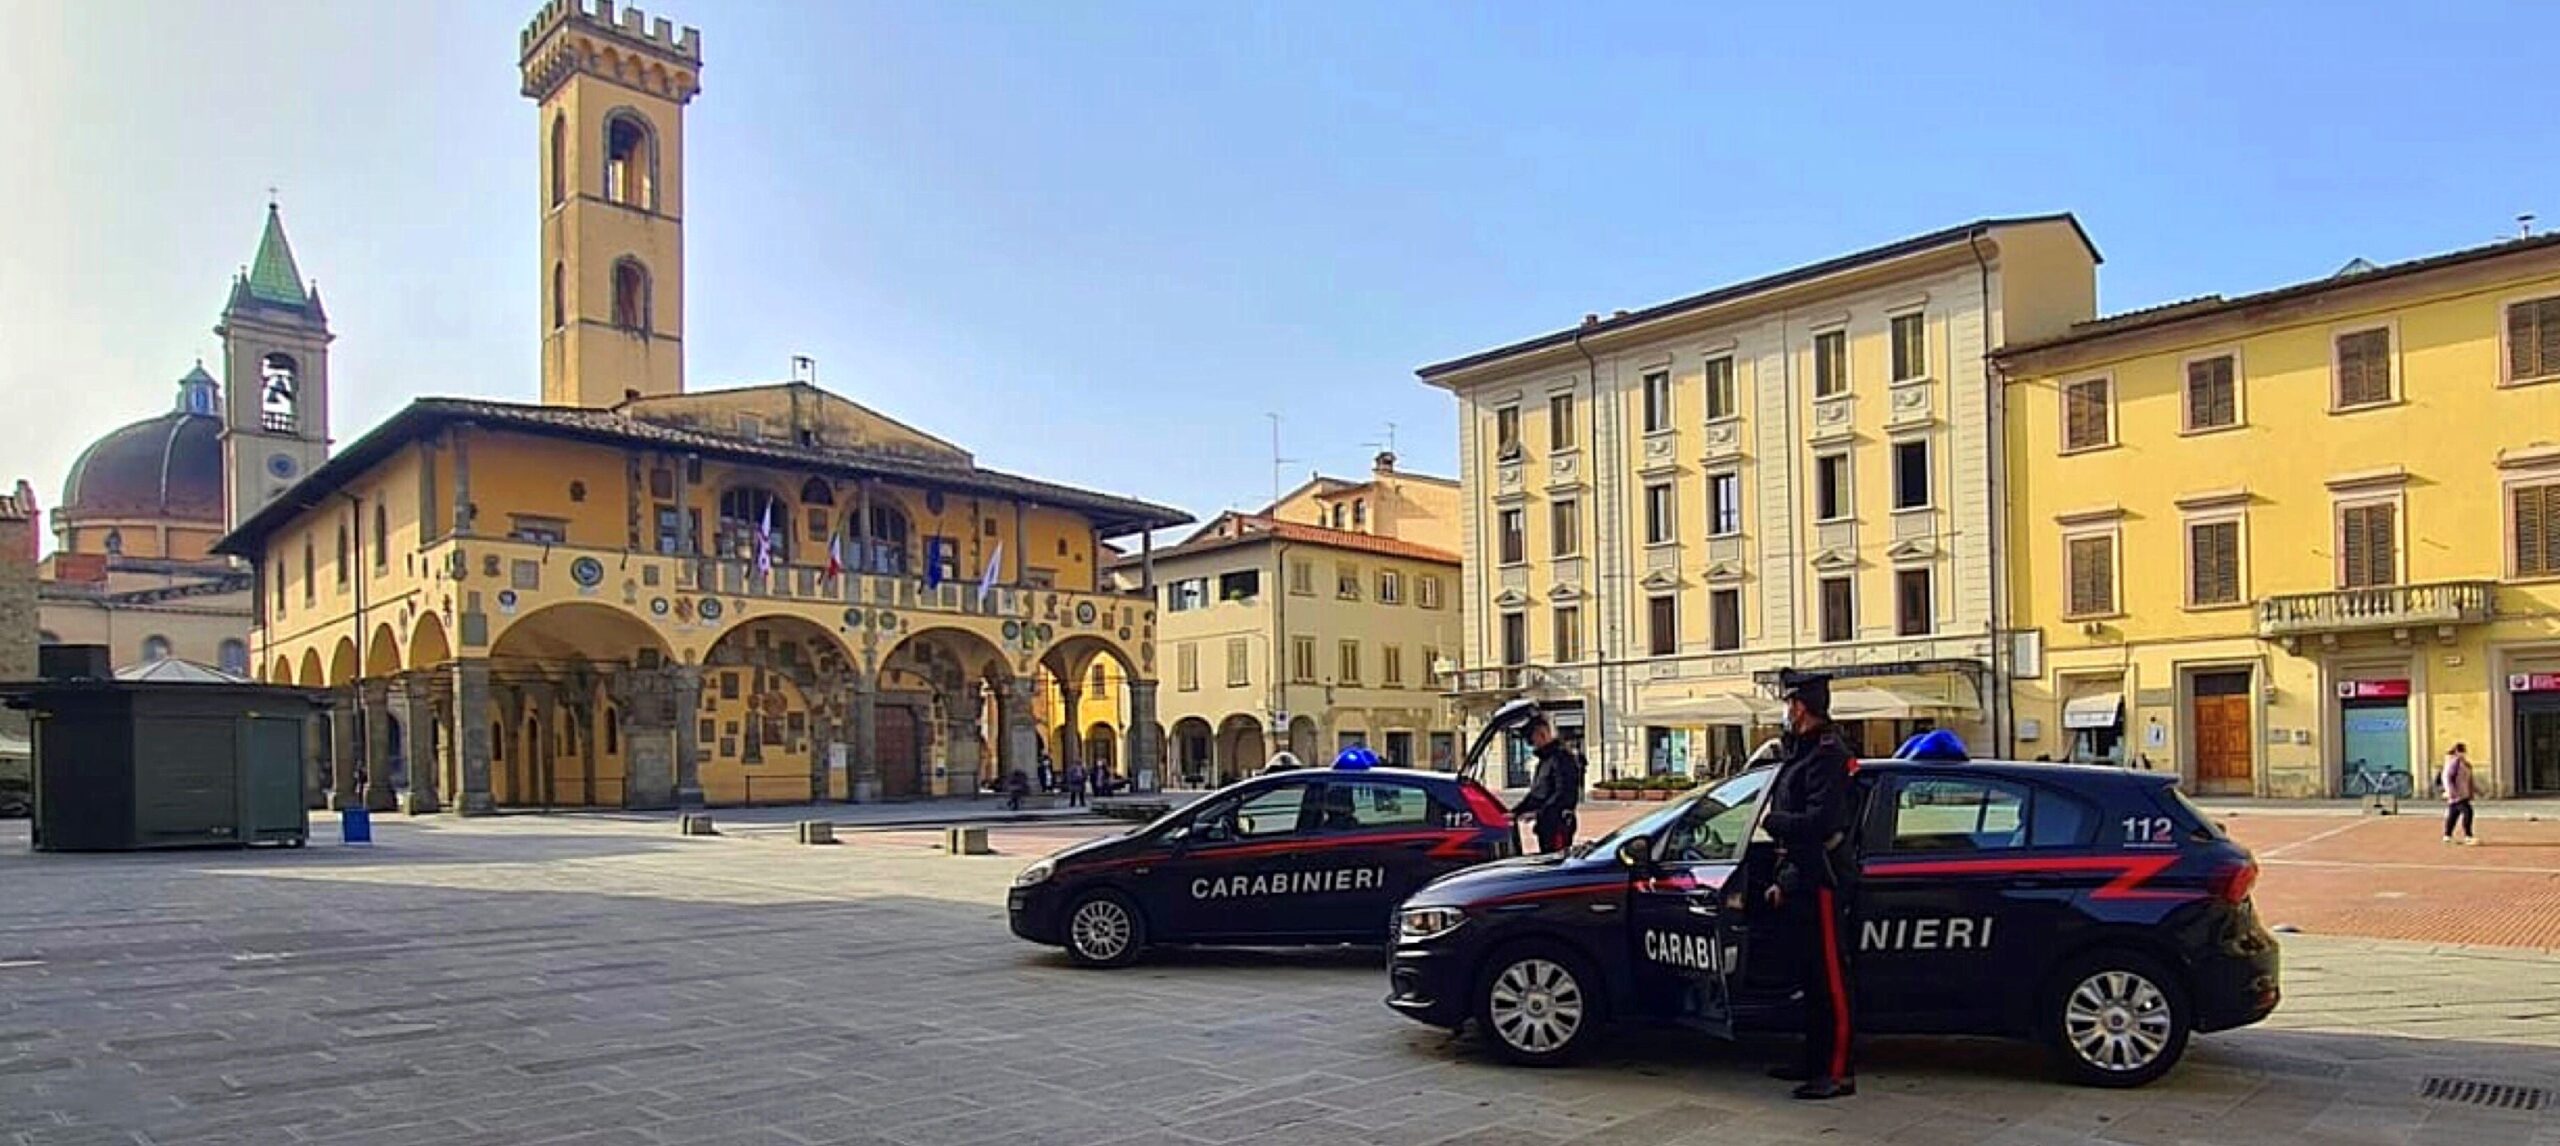 Carabinieri: altra operazione contro ladri in Valdarno